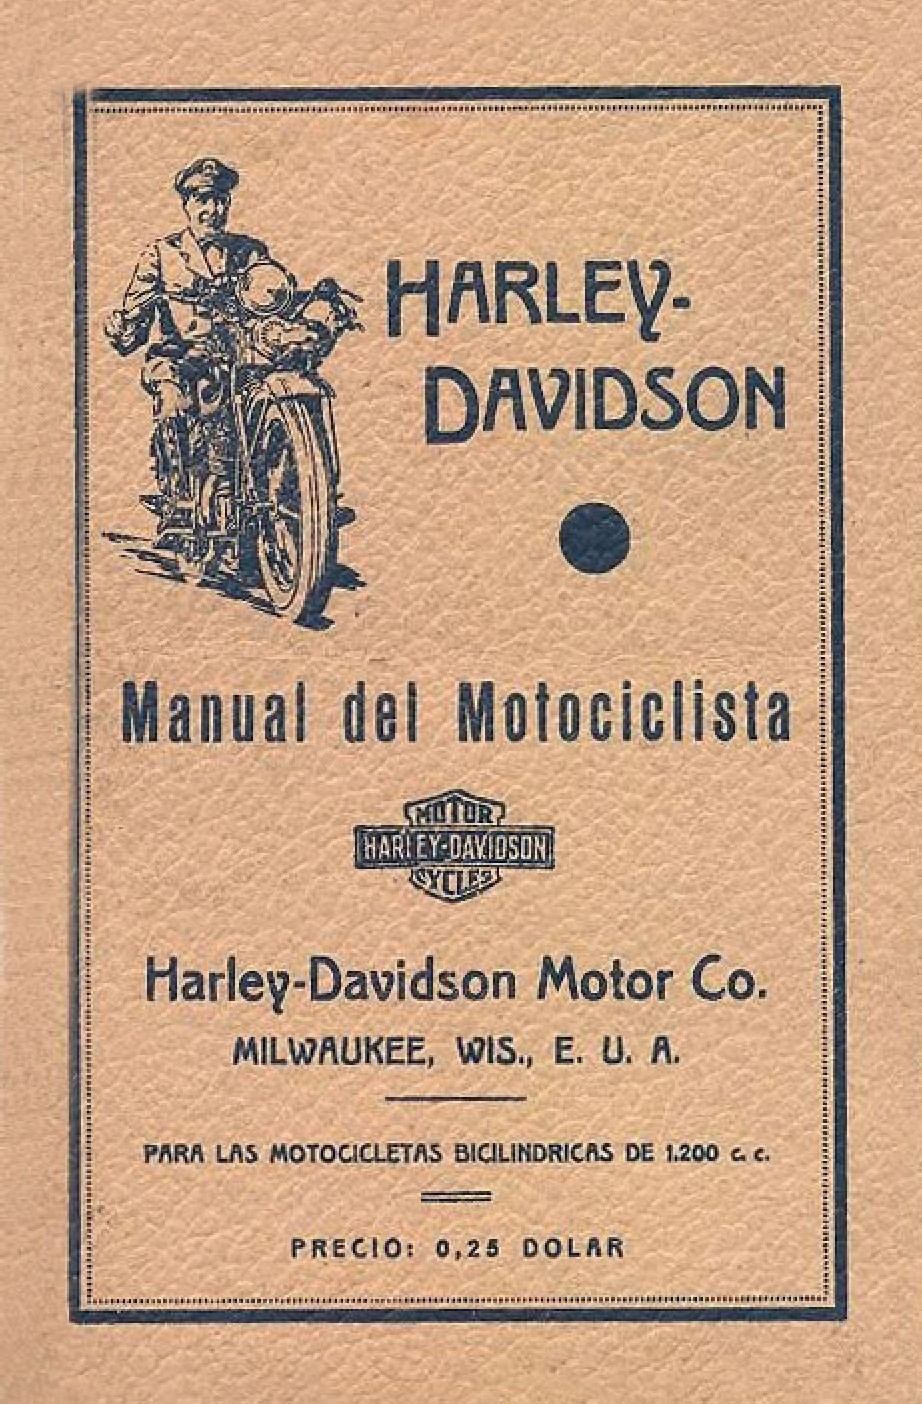 1930-1936 - Harley-Davidson manual de usuario VL